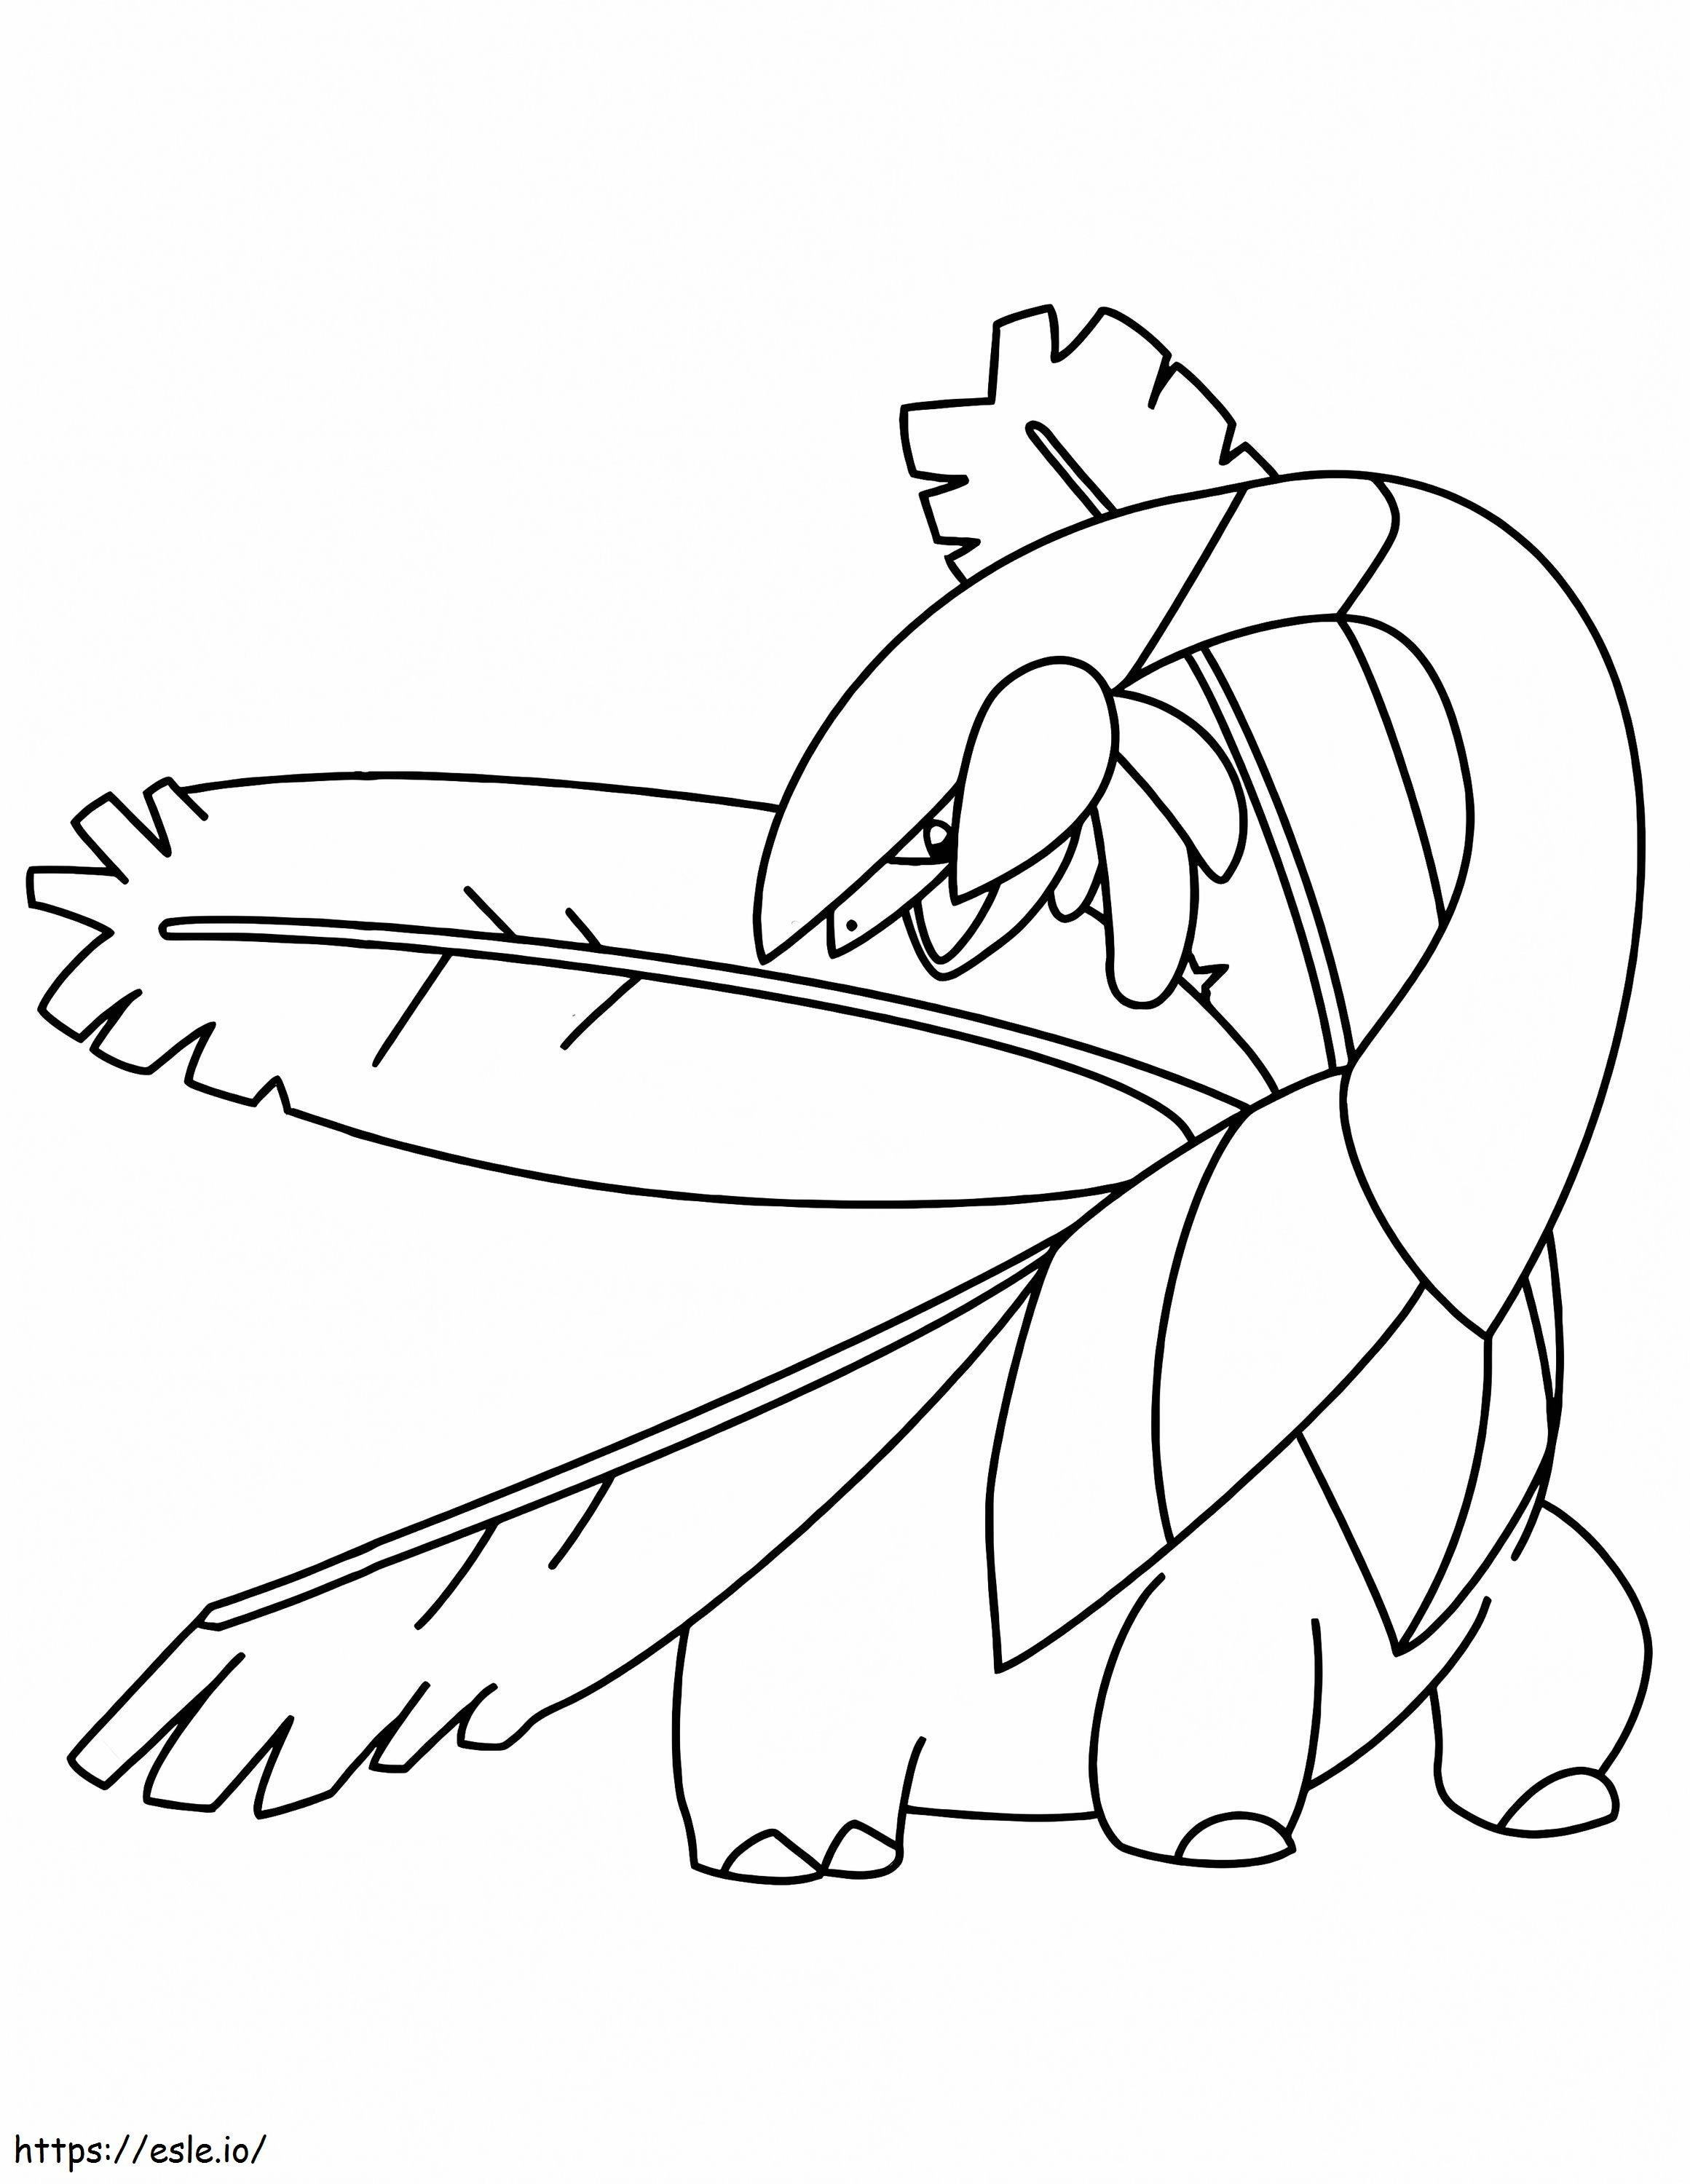 Coloriage Pokémon Tropius Gen 3 à imprimer dessin